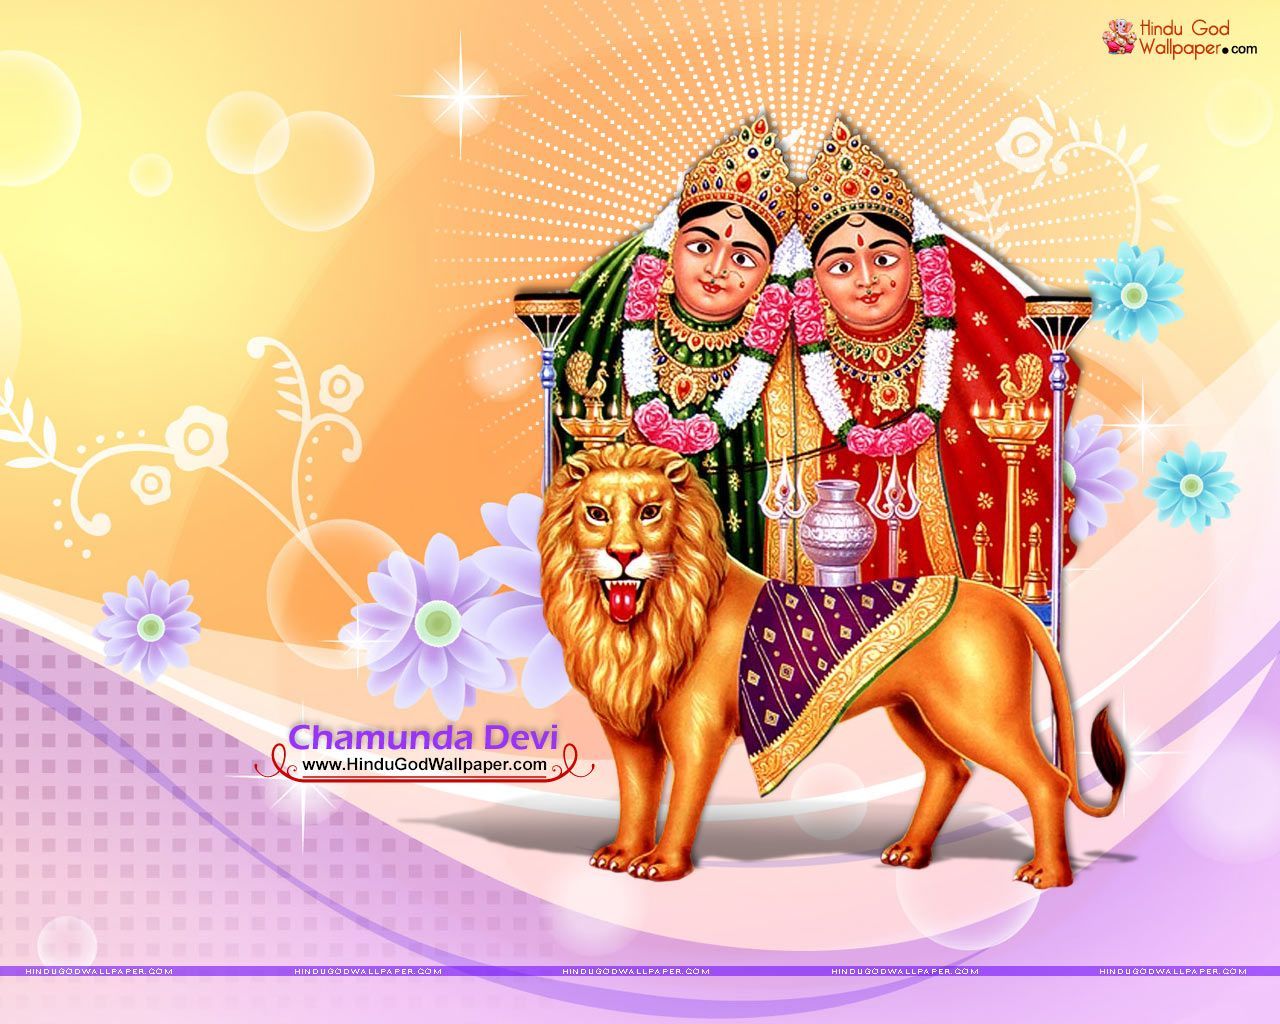 Mata Chamunda Devi Wallpaper & Photo Free Download. Wallpaper free download, Maa wallpaper, Maa image